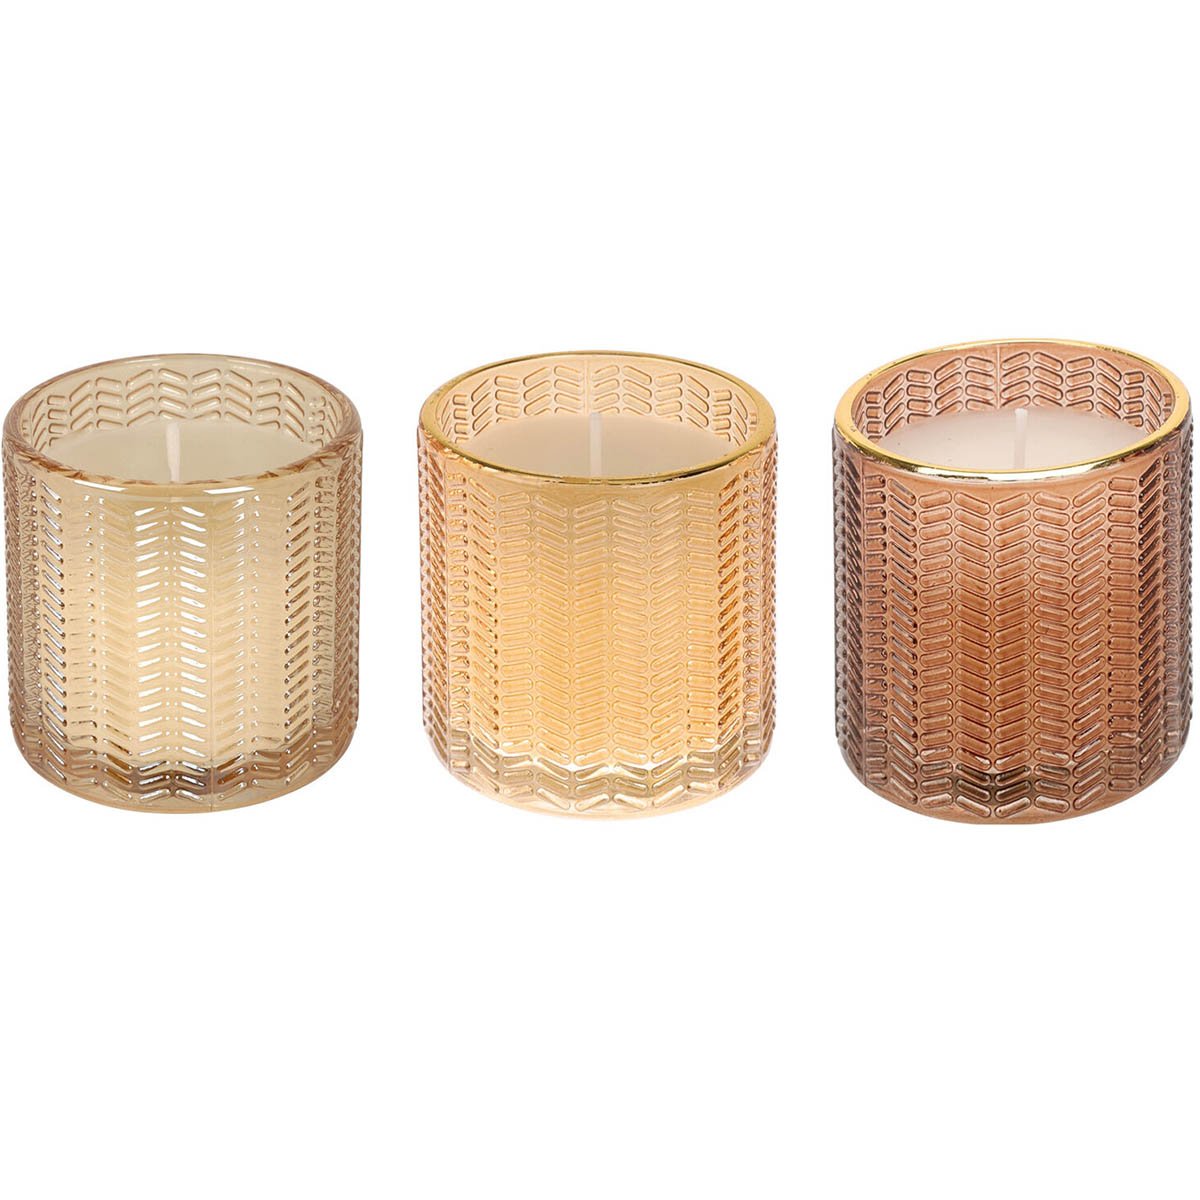 Dekoratyvinė žvakė stikliniame indelyje, auksinės sp., 3 rūšys, 7 cm